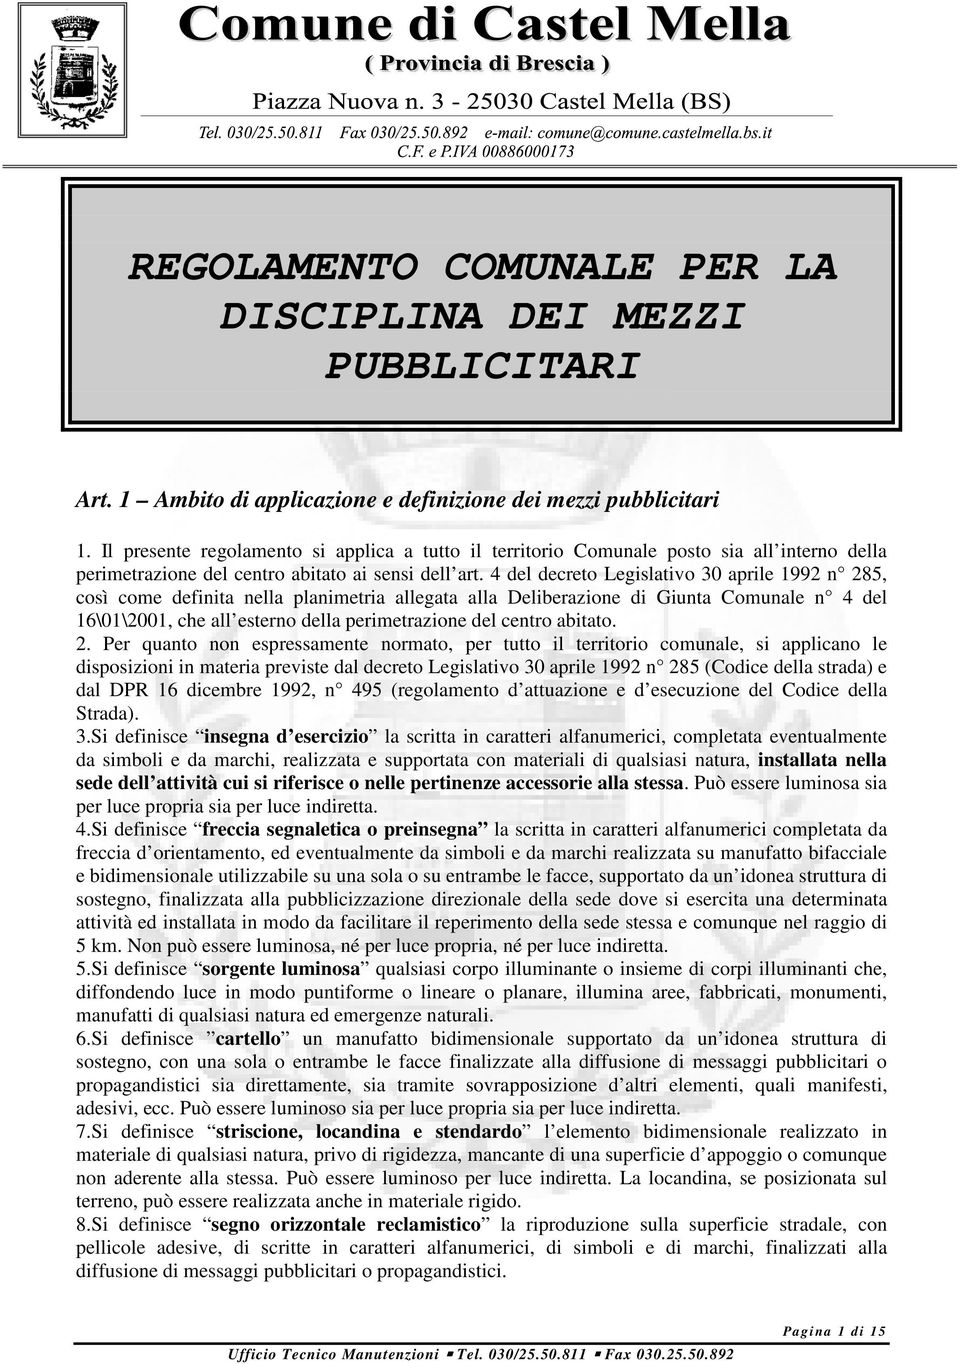 4 del decreto Legislativo 30 aprile 1992 n 285, così come definita nella planimetria allegata alla Deliberazione di Giunta Comunale n 4 del 16\01\2001, che all esterno della perimetrazione del centro